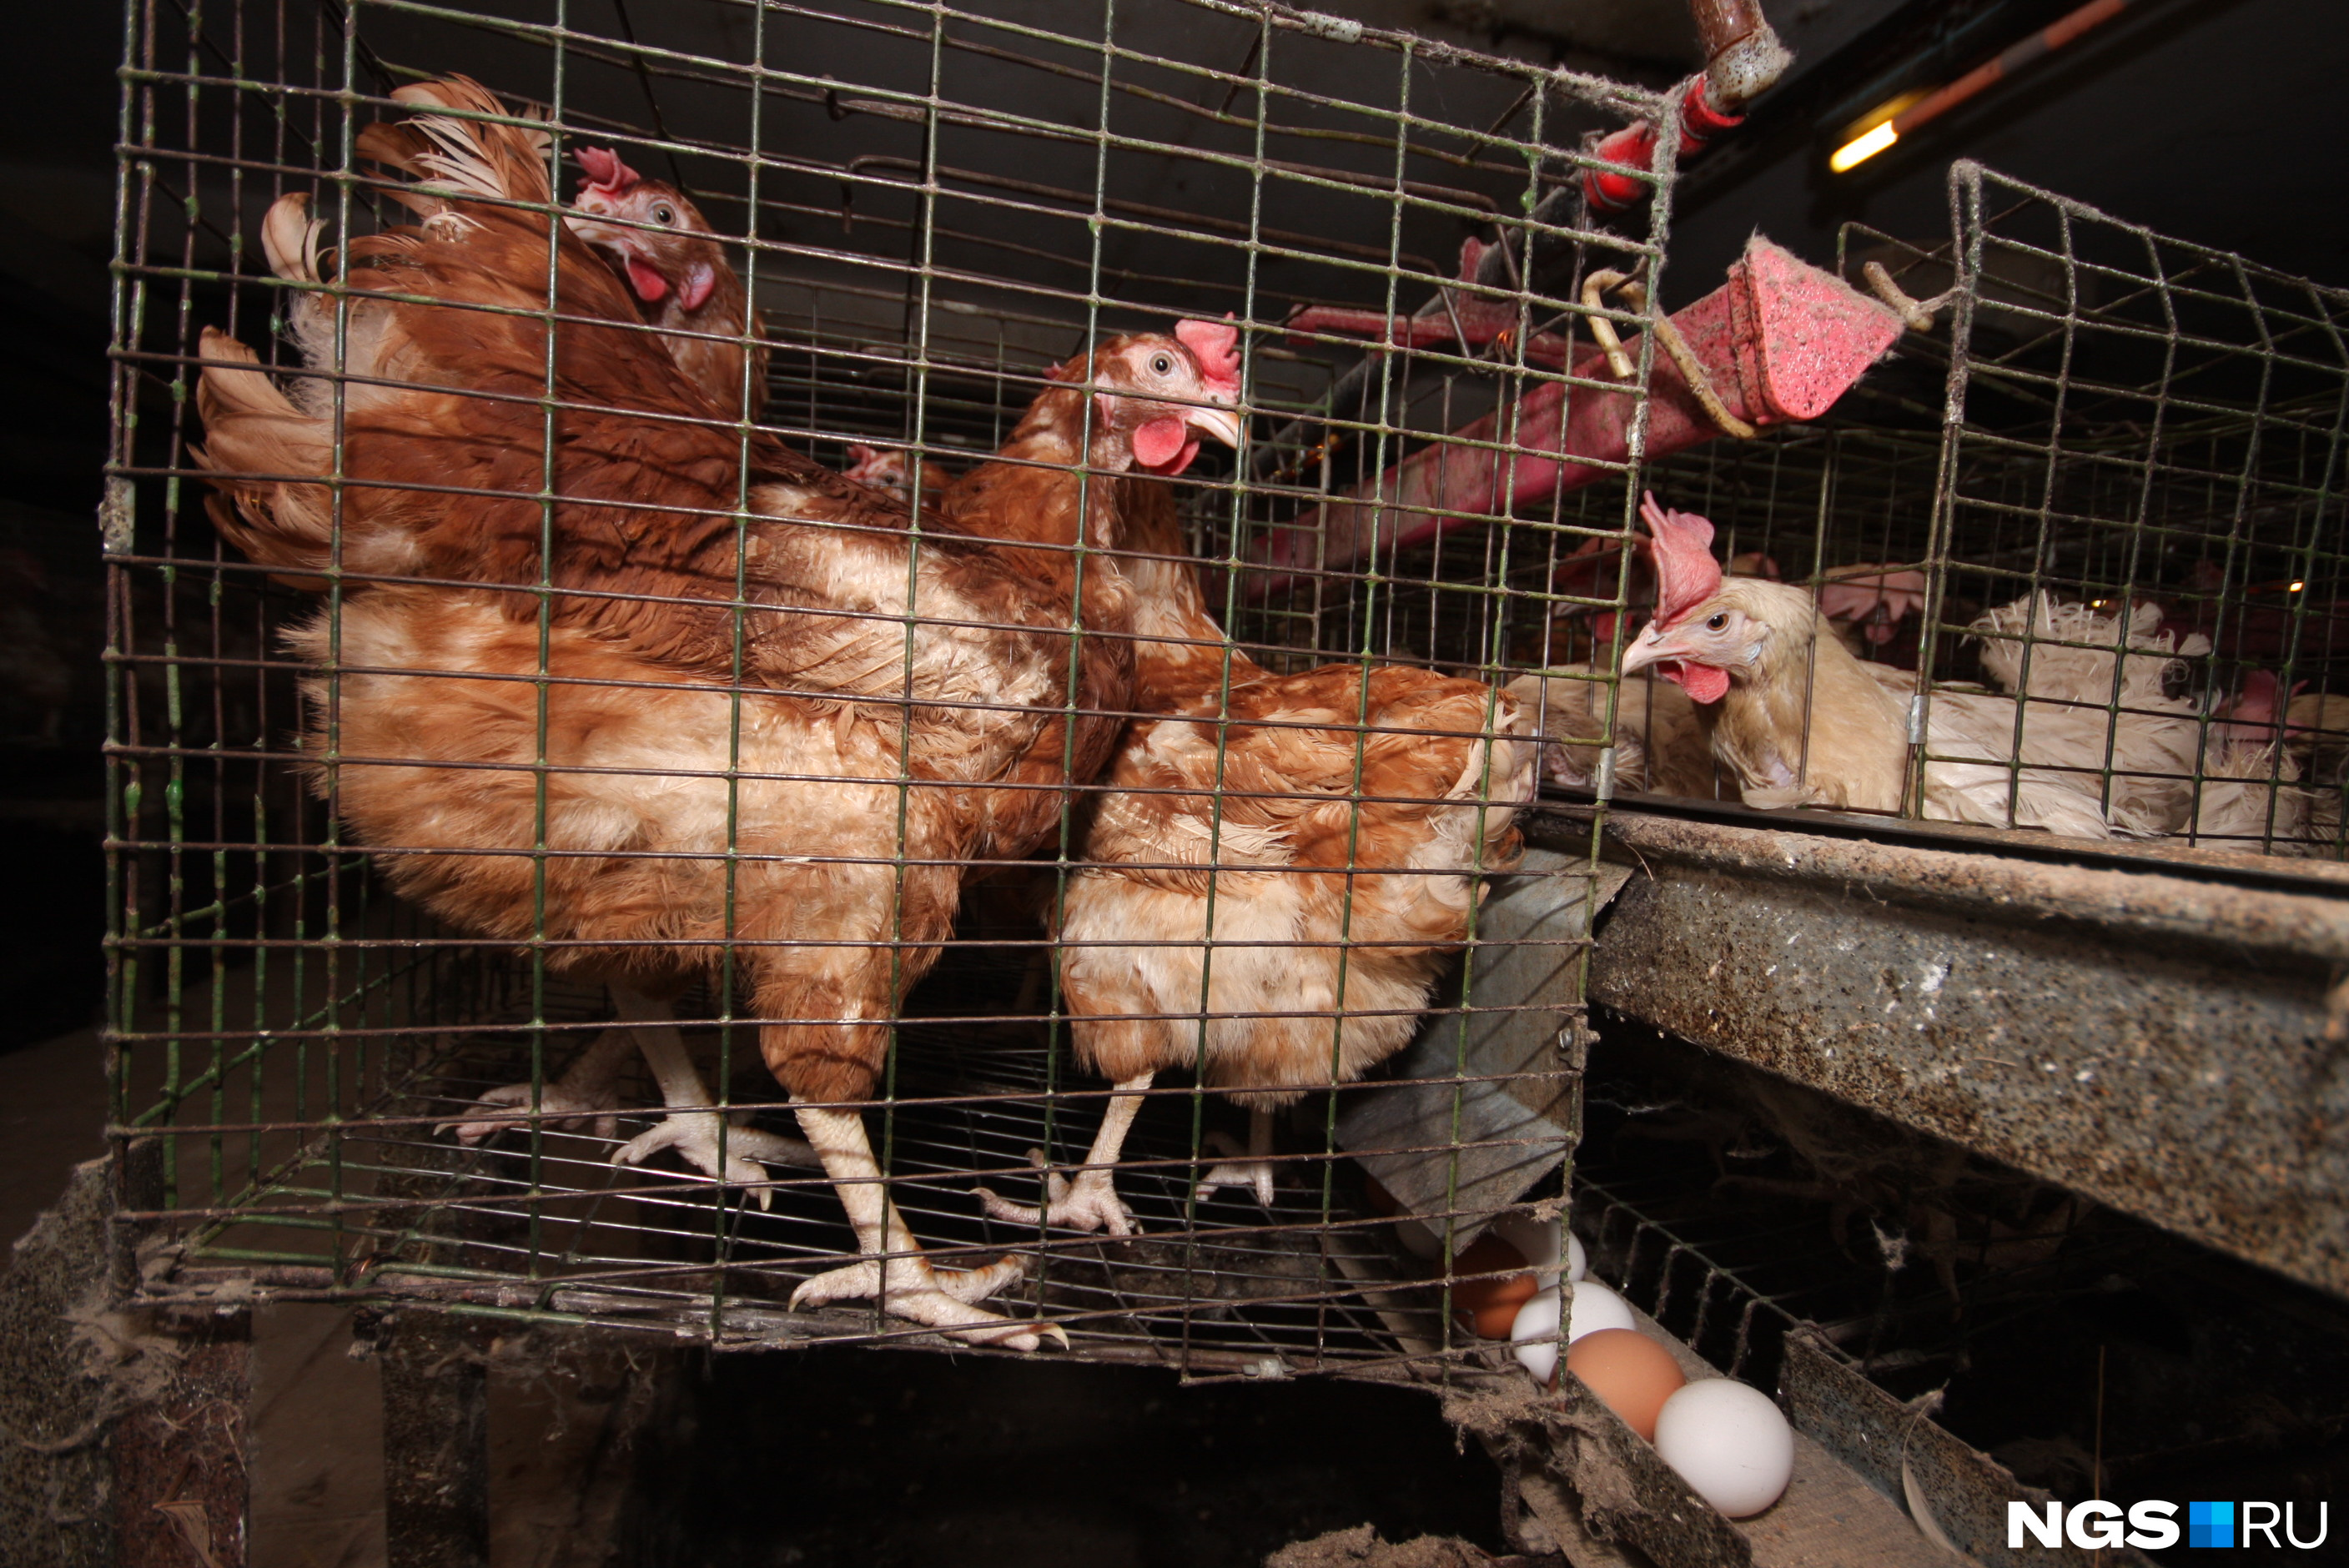 Птицефабрикам выживать легче, чем небольшим производителям яиц, но и они порой закрываются, не выдержав летнего спада цен или внезапно наступившего птичьего гриппа